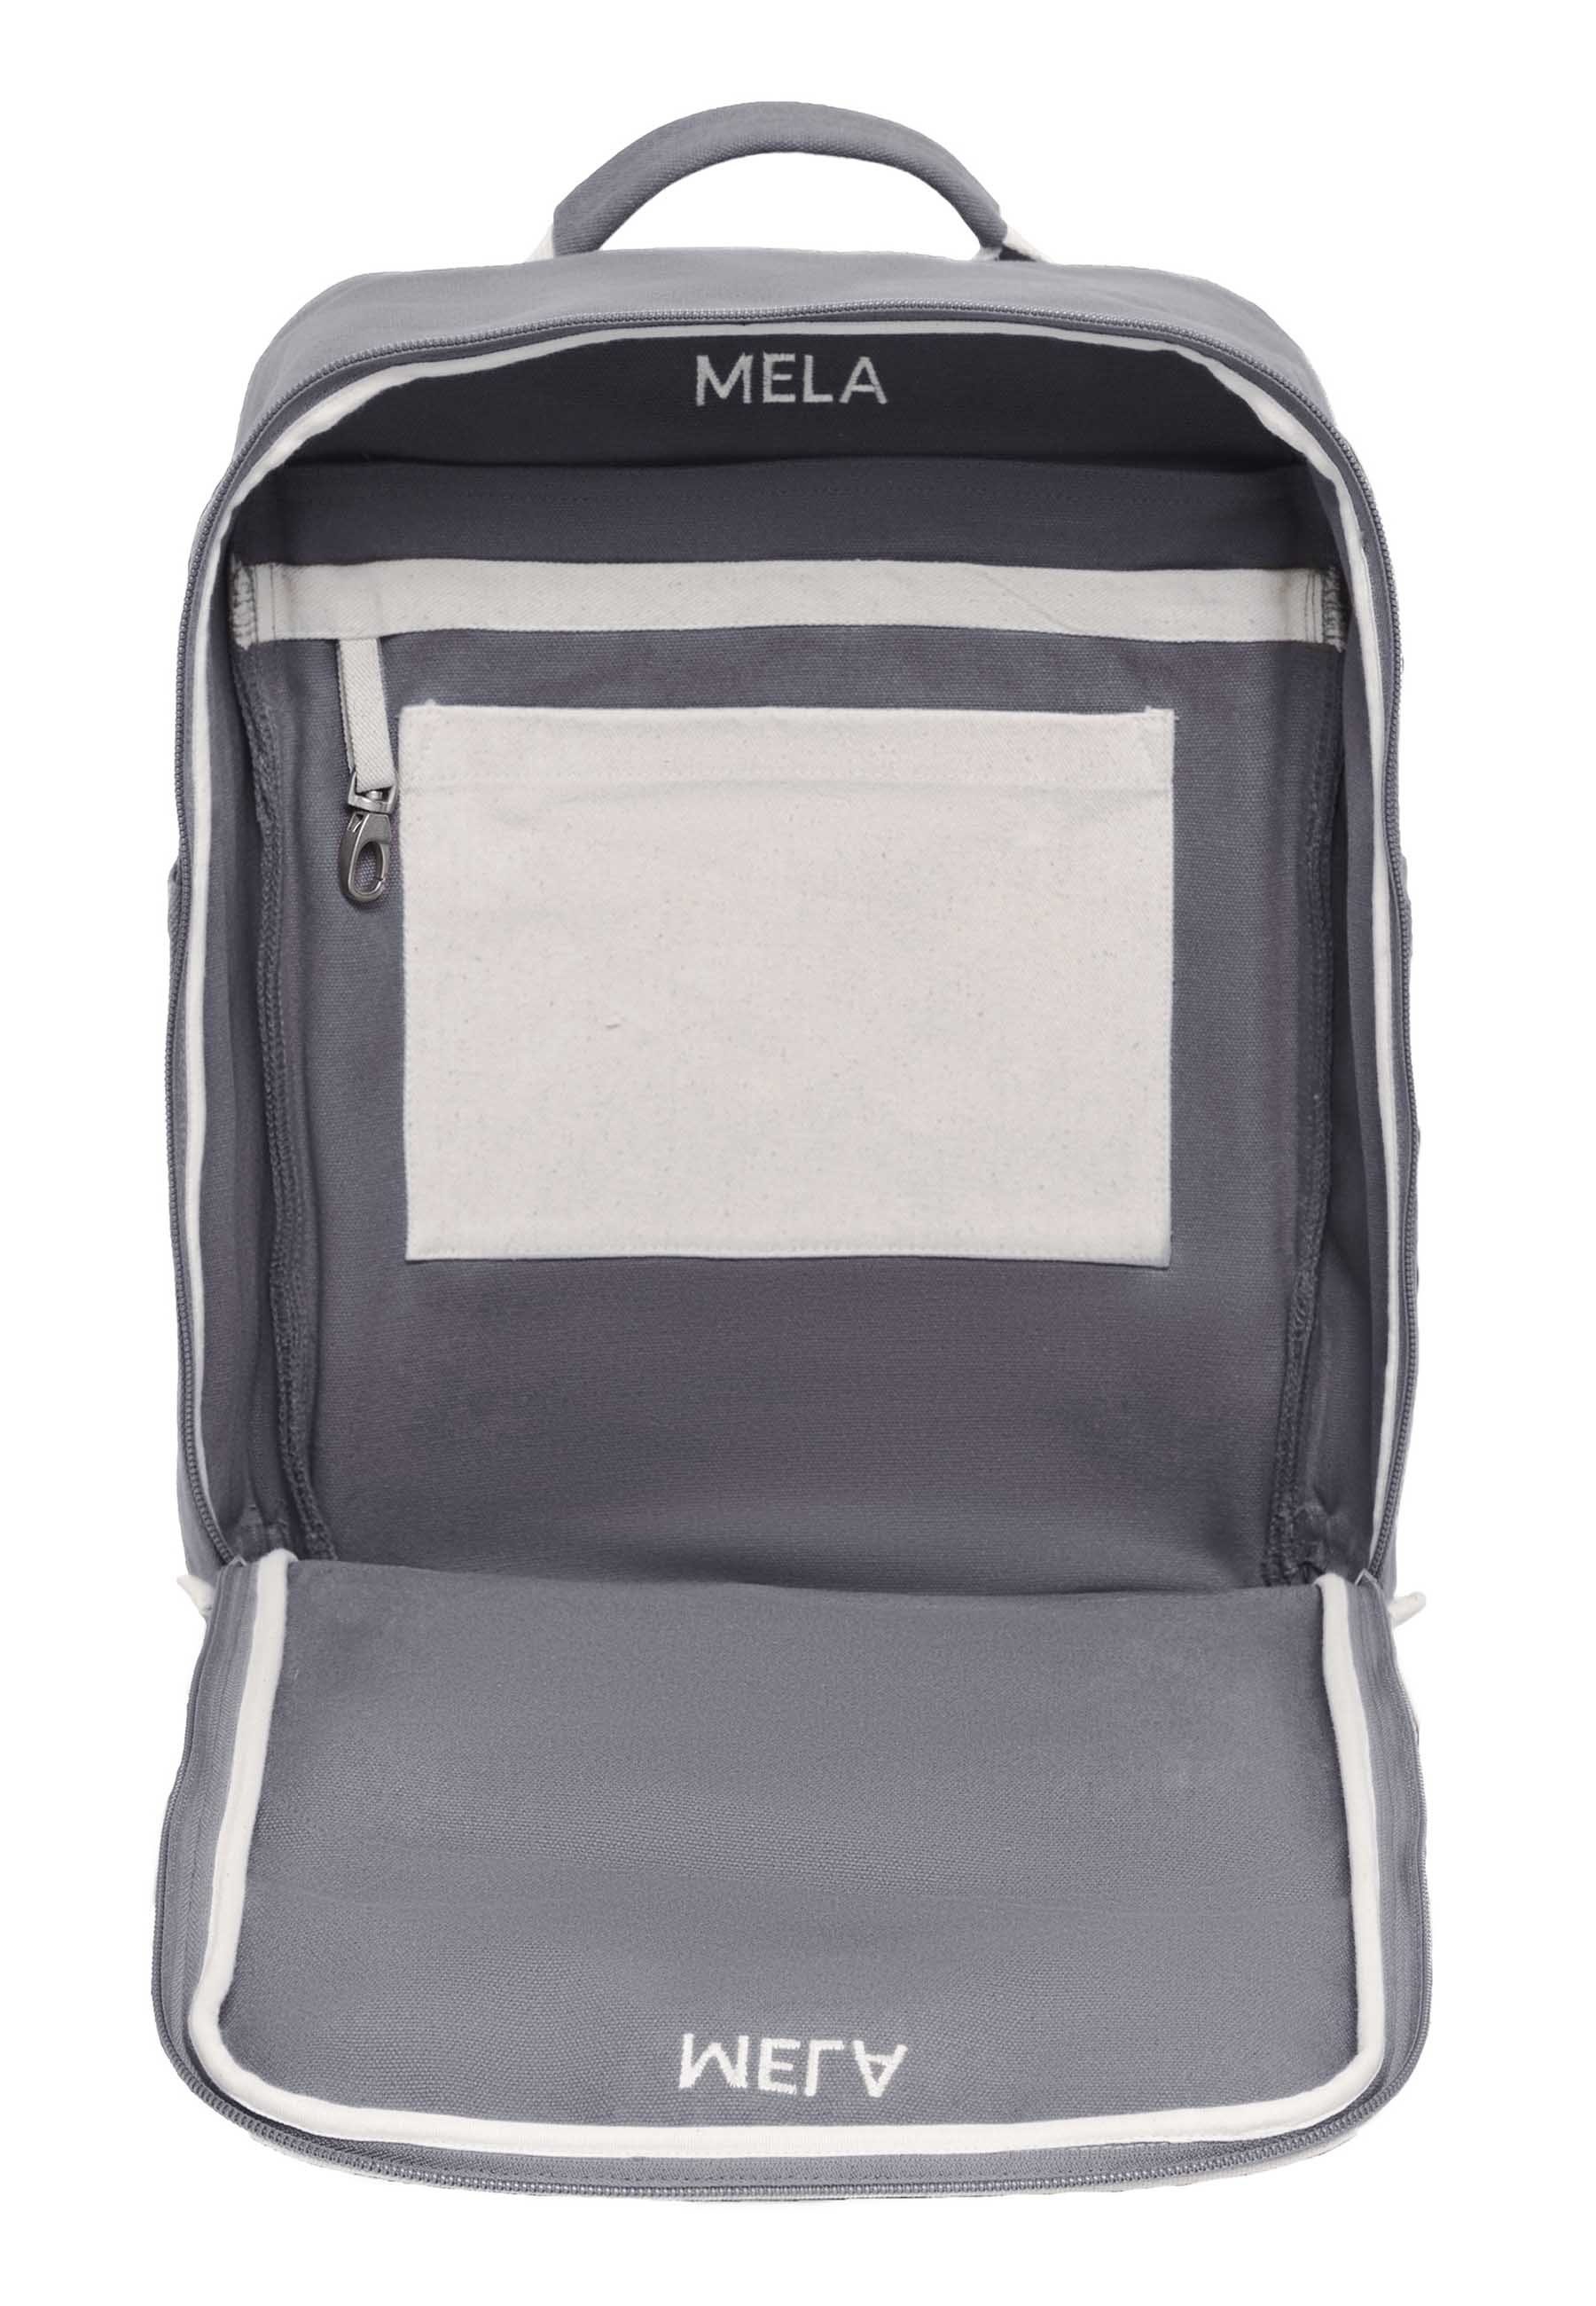 MELA Rucksack Rucksack bis grau komplett & MELA Boden öffnen Packen) sich II, vereinfacht das Reißverschluss zum lässt (Vorderseite